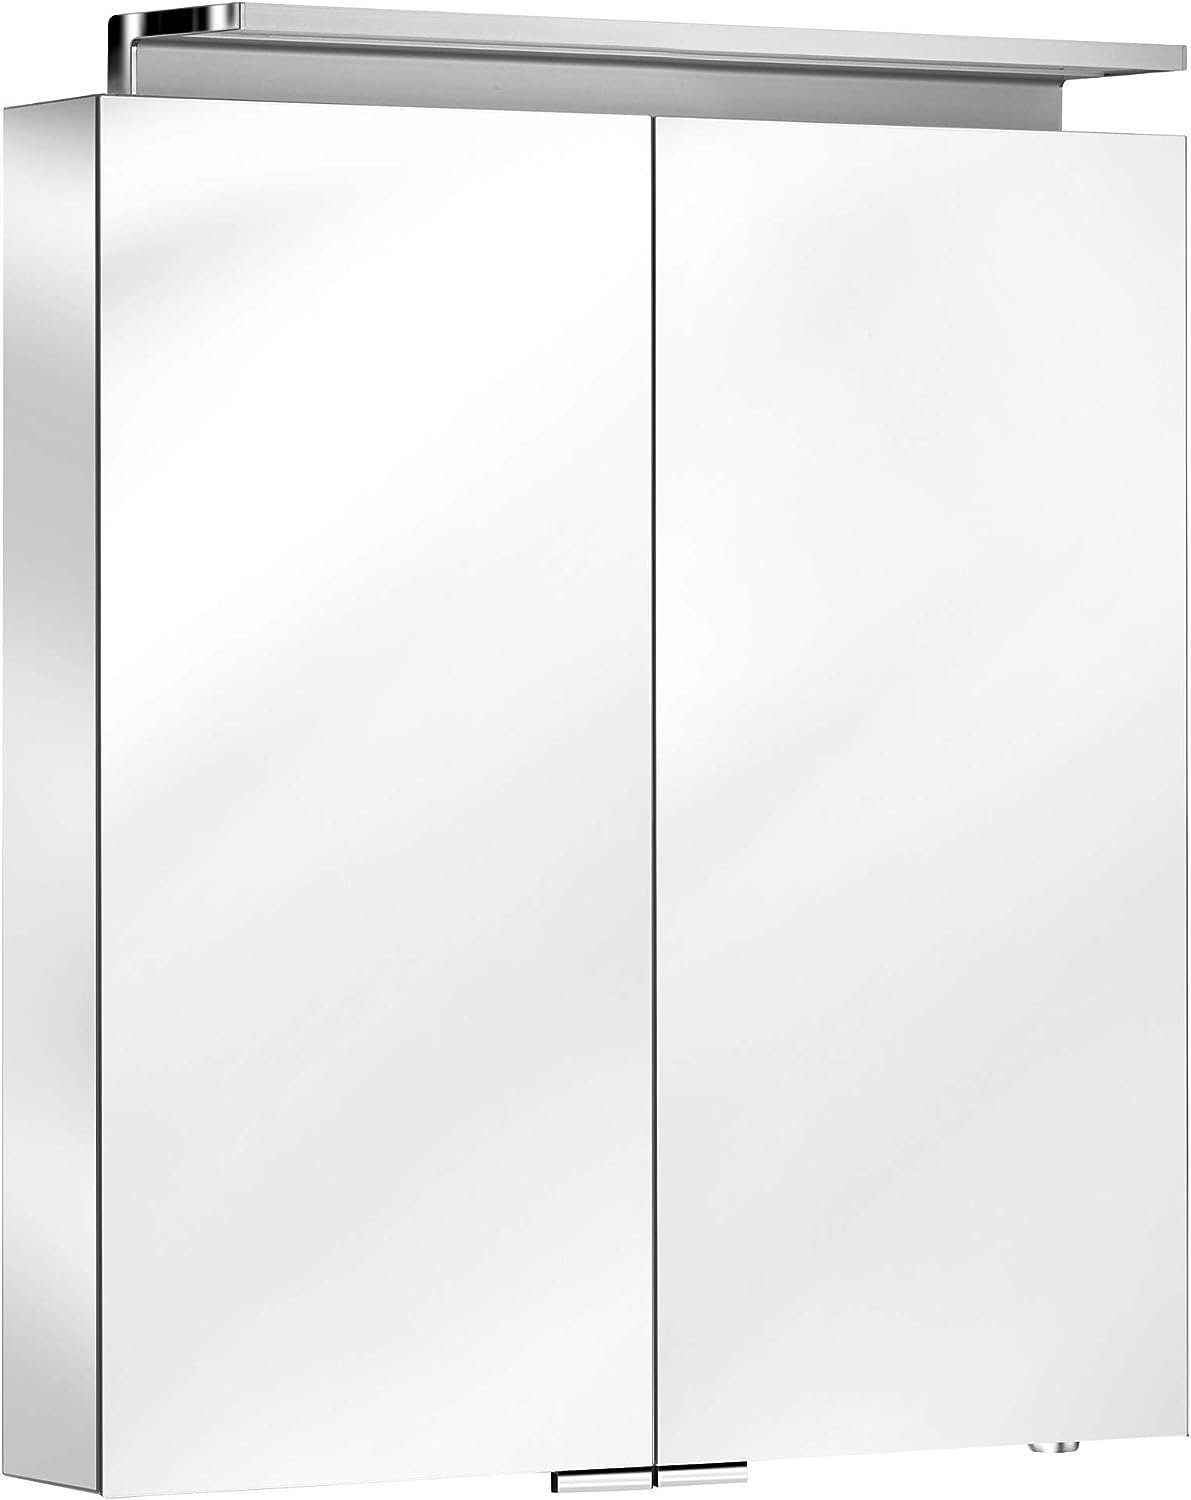 Keuco Spiegelschrank Royal L1 (Badezimmerspiegelschrank mit Beleuchtung LED) dimmbare LEDs, Wandbeleuchtung, verspiegelter Korpus, 2 Türen, 80 cm